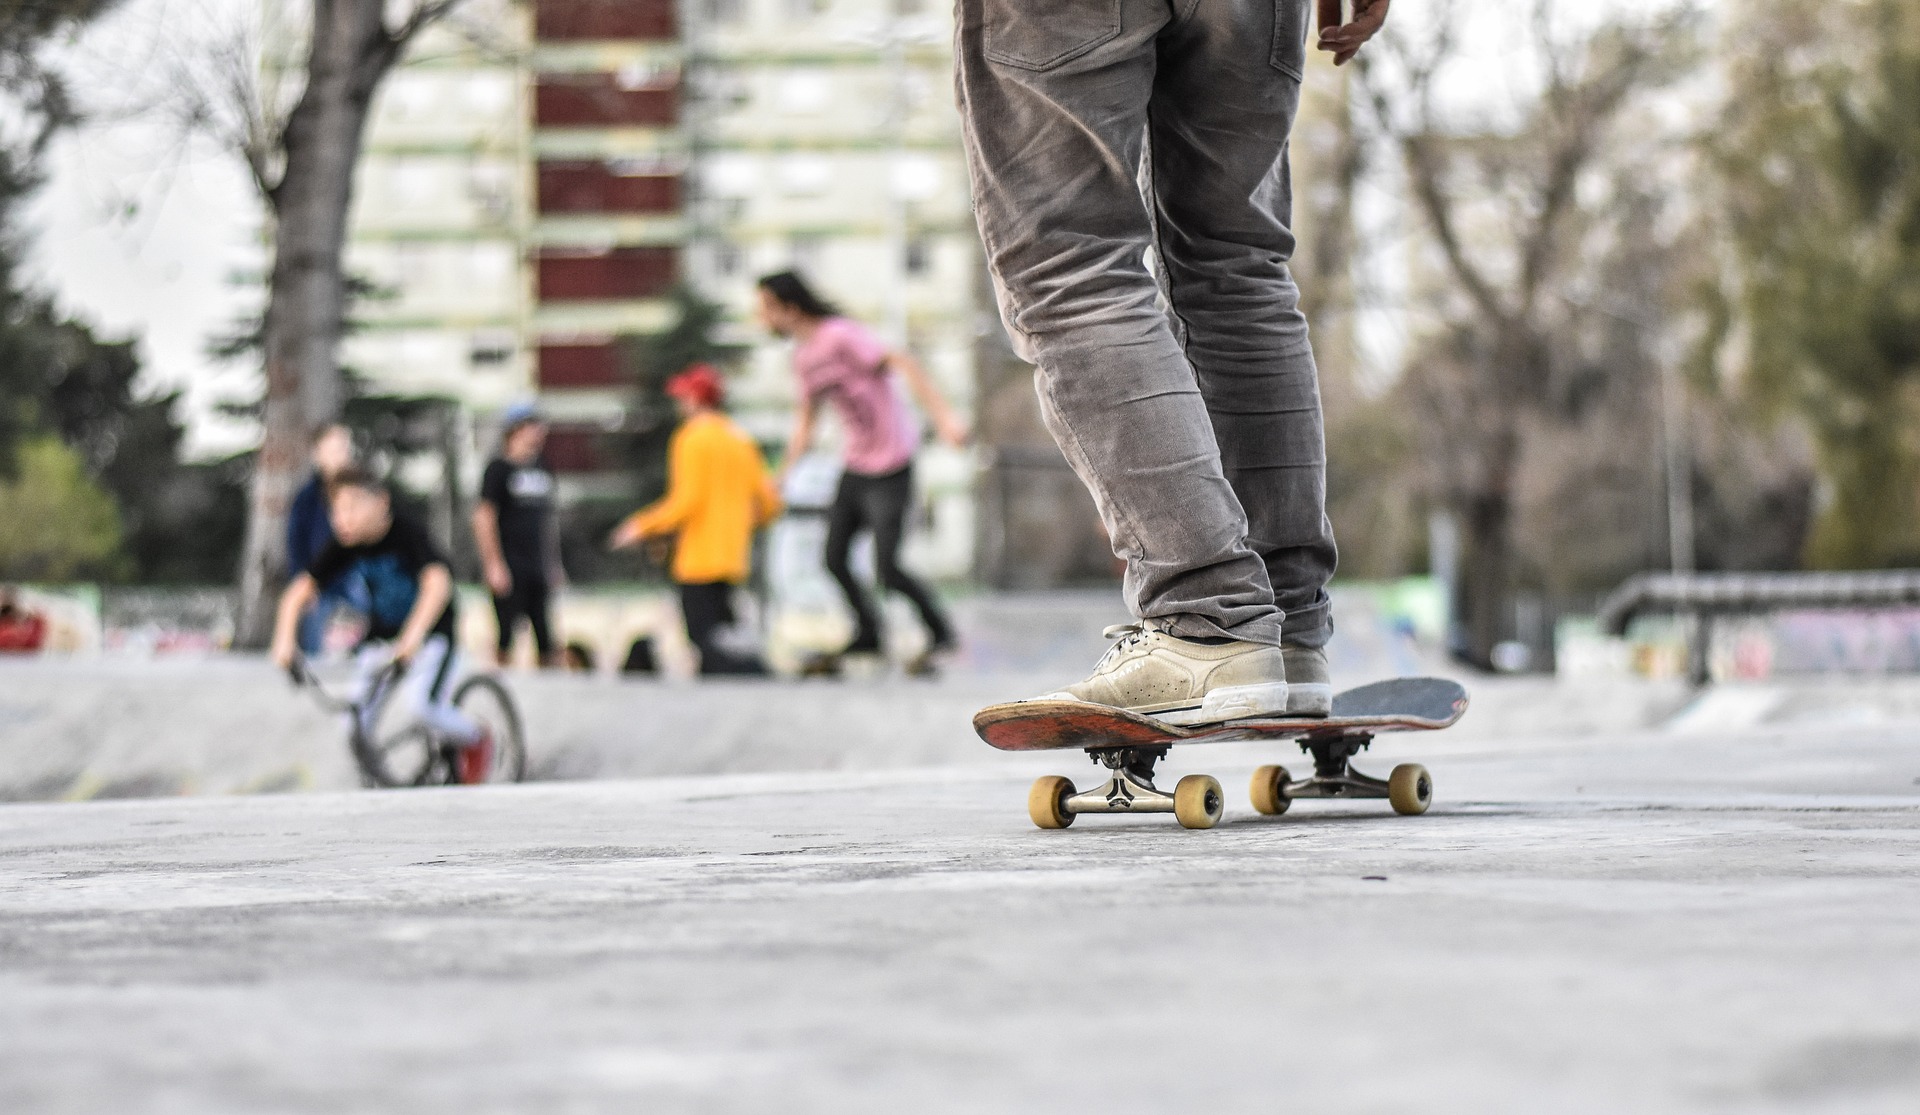 Auf dem Bild sieht man eine Person auf einem Skateboard. Im Hintergrund sind Jugendliche zu sehen. 